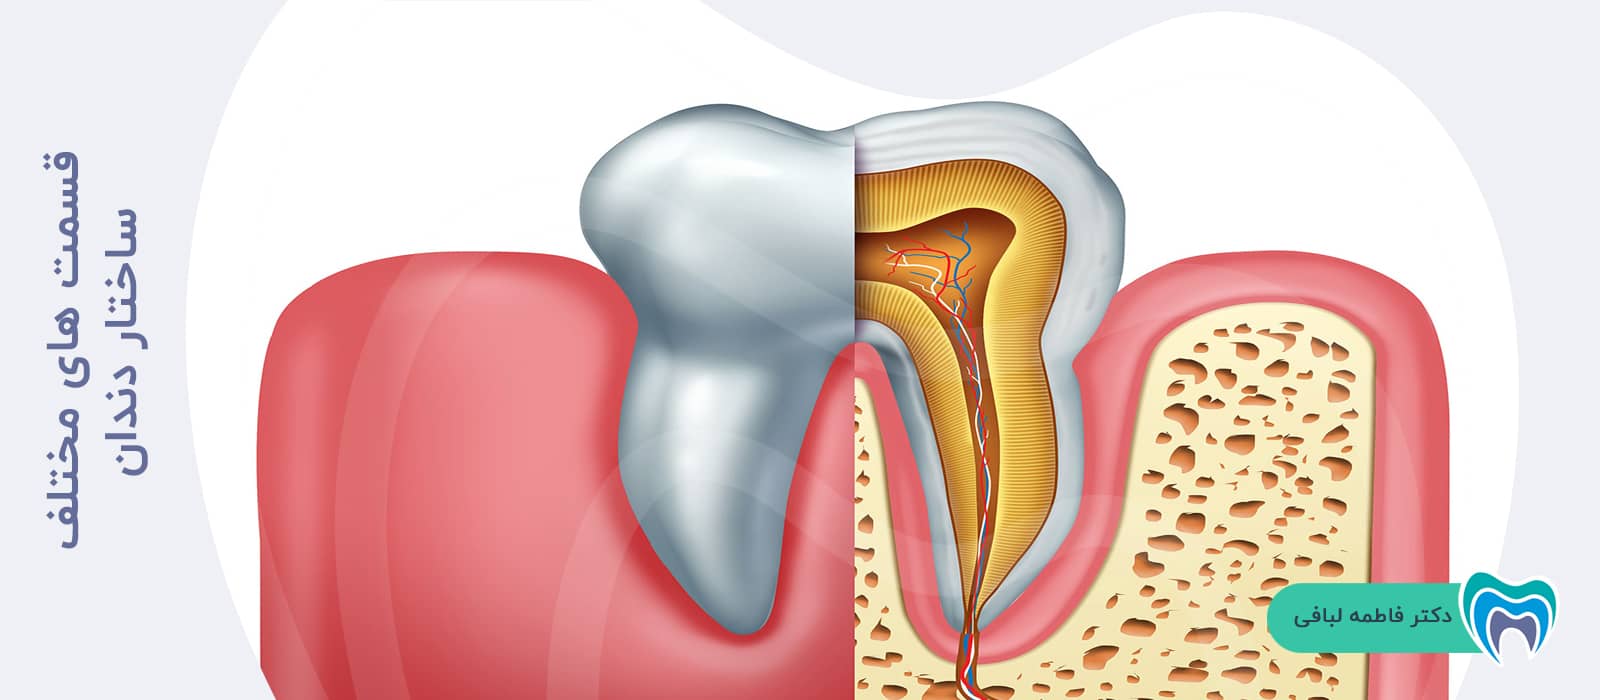 قسمت های مختلف ساختار دندان